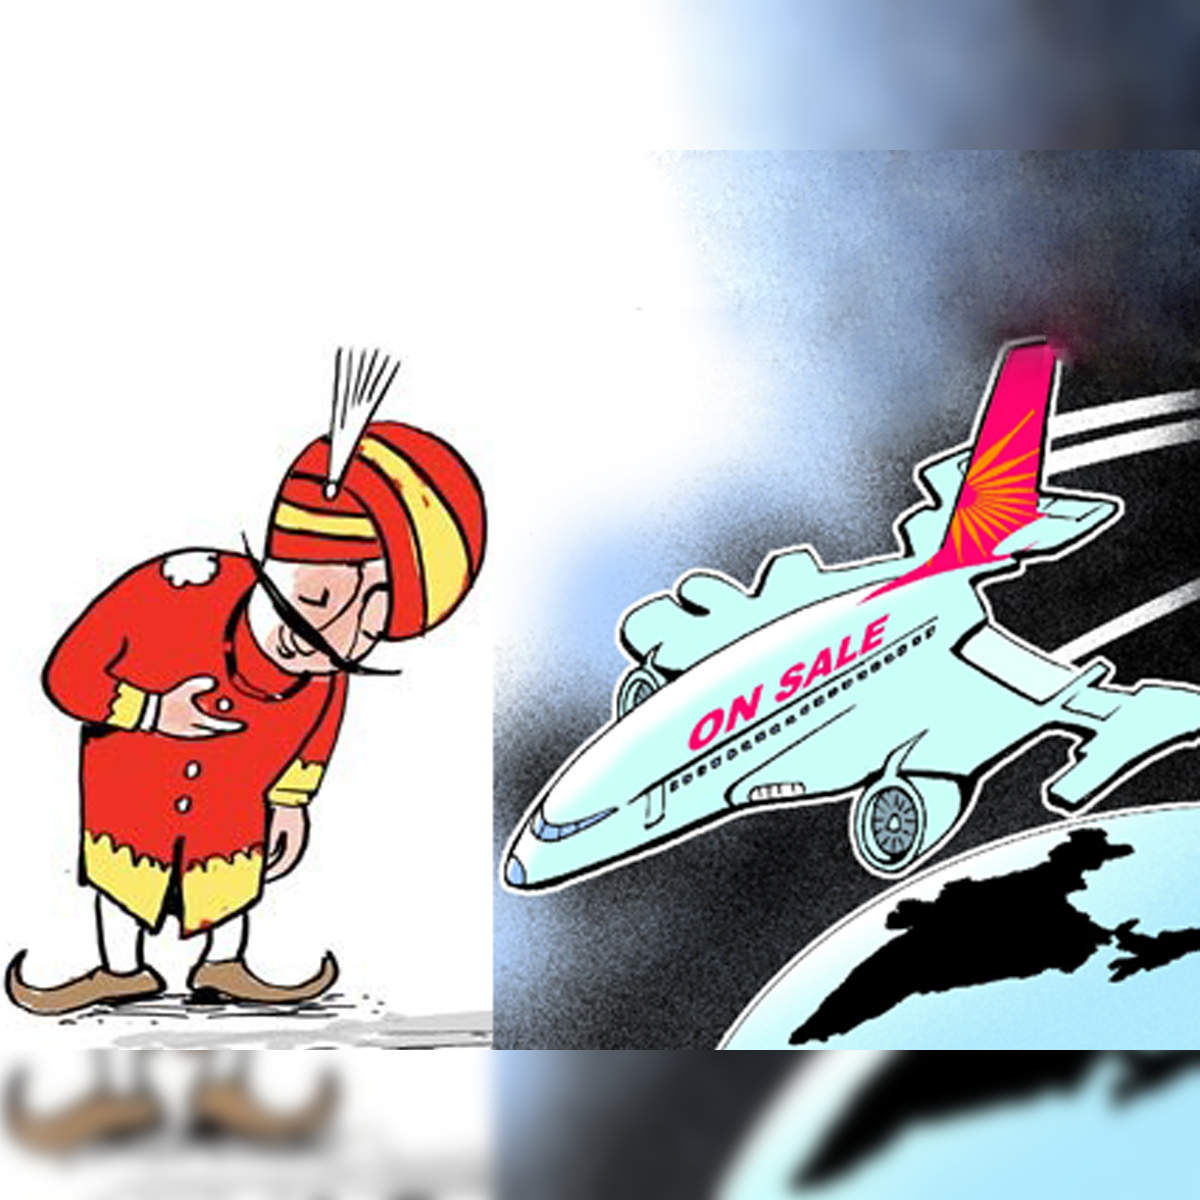 इस पाकिस्तानी शख्स के कारण Air India के 'महाराजा' की मूछें है ऐसी, दिलचस्प  है कहानी | Times Now Navbharat